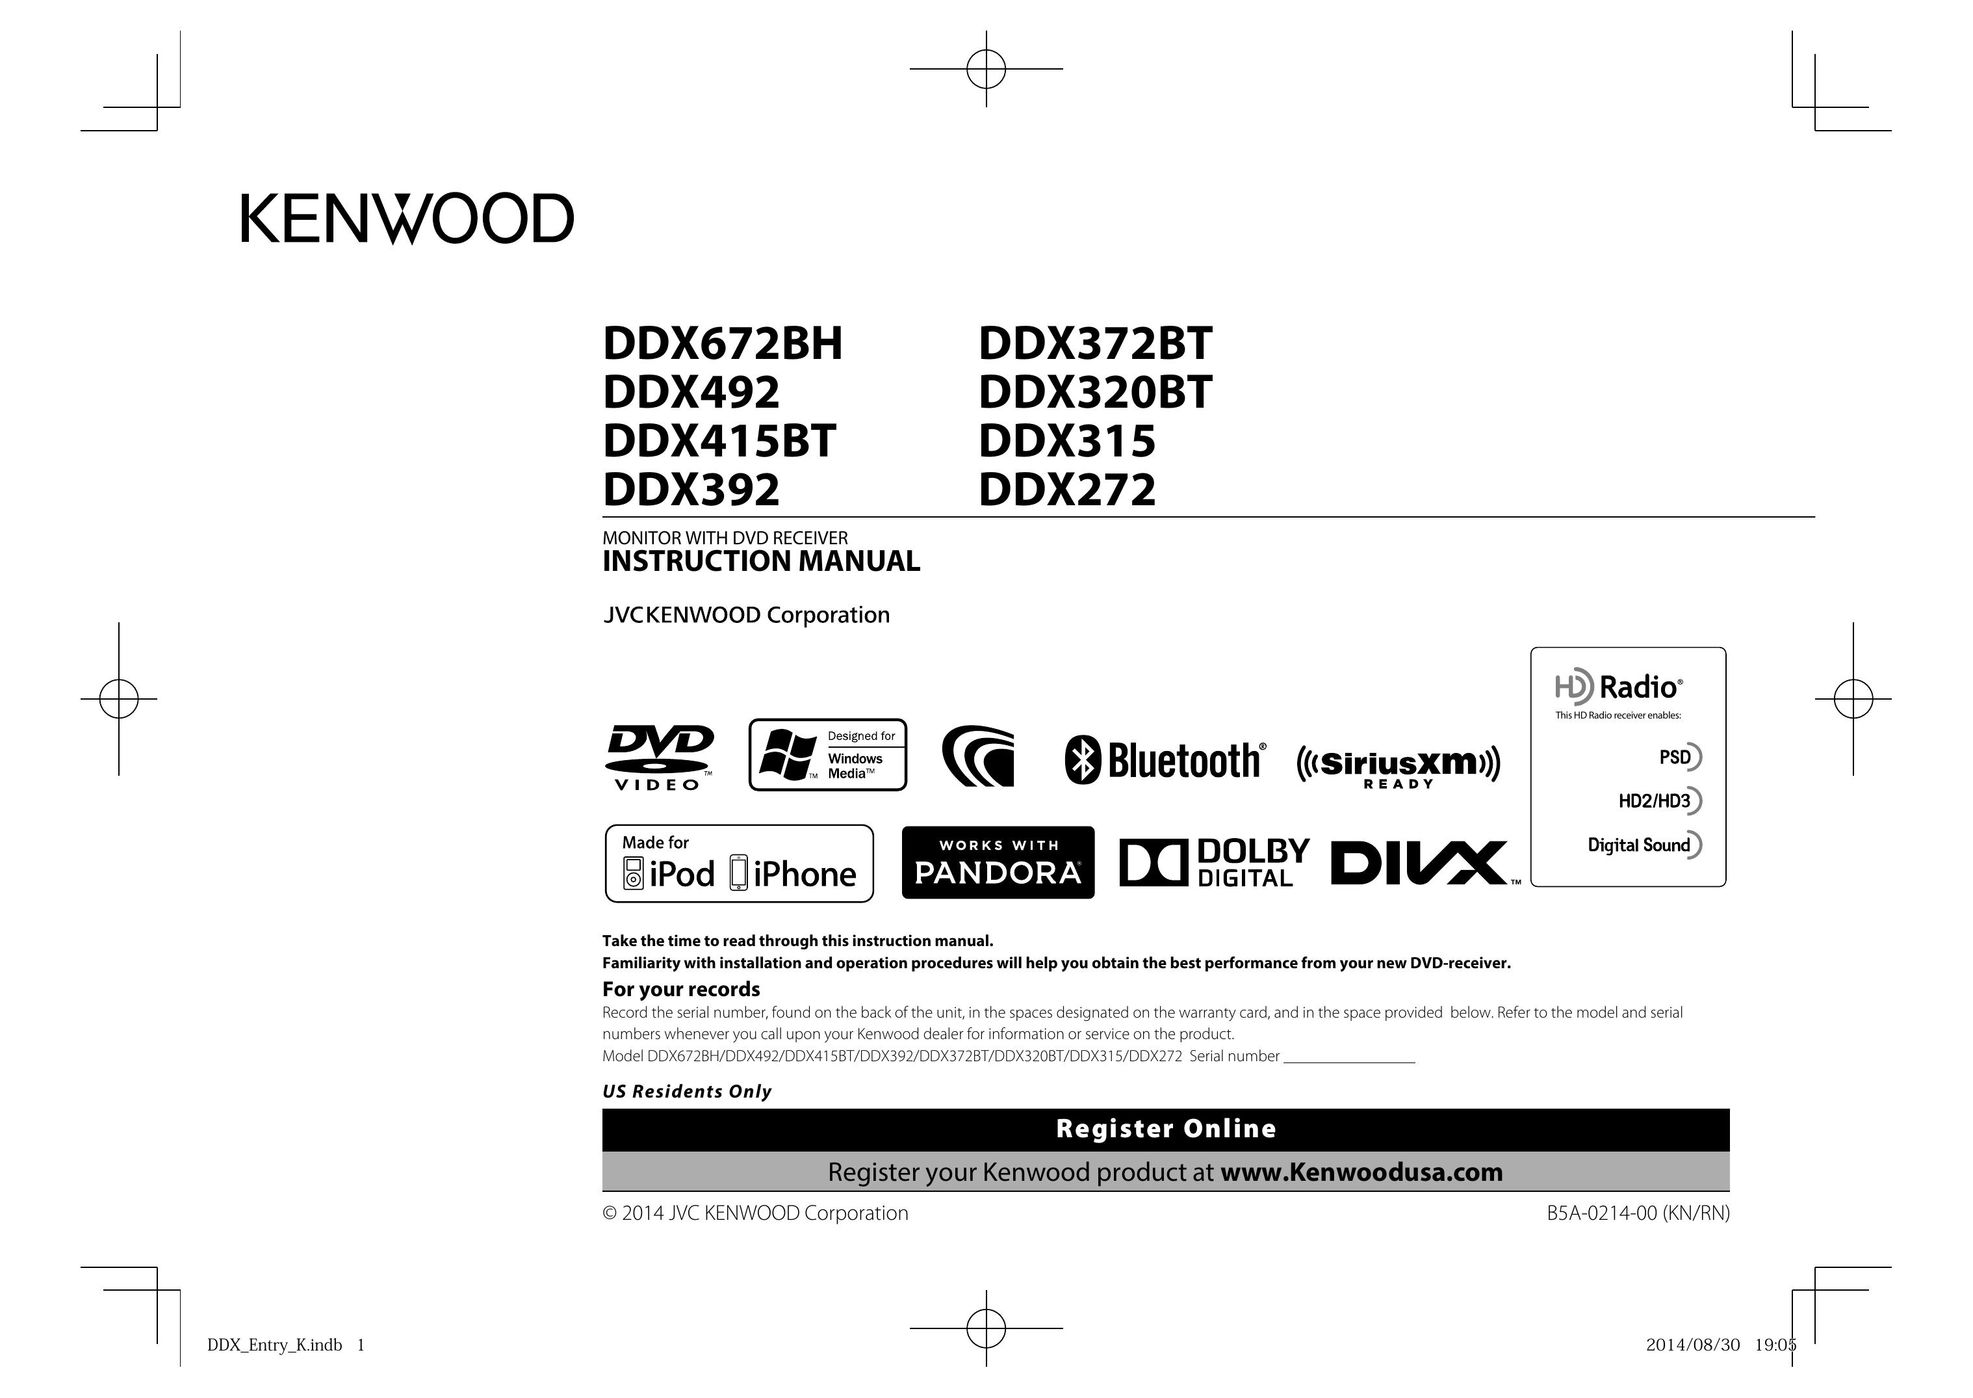 Kenwood DDX320BT Car Video System User Manual